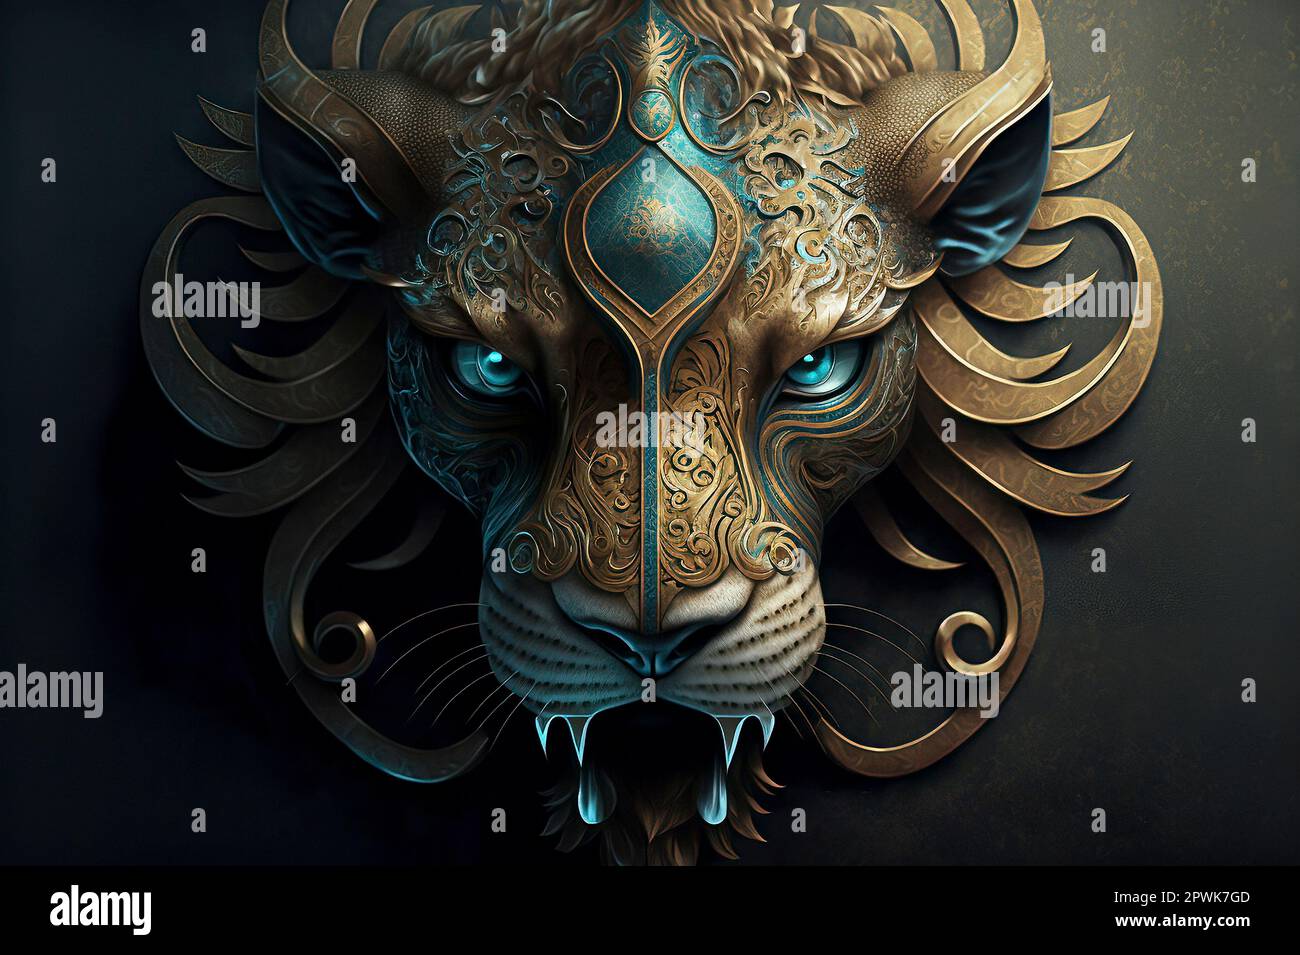 Kunstvolle dekorative Maske mit blauem und goldenem Löwenkopf  Stockfotografie - Alamy